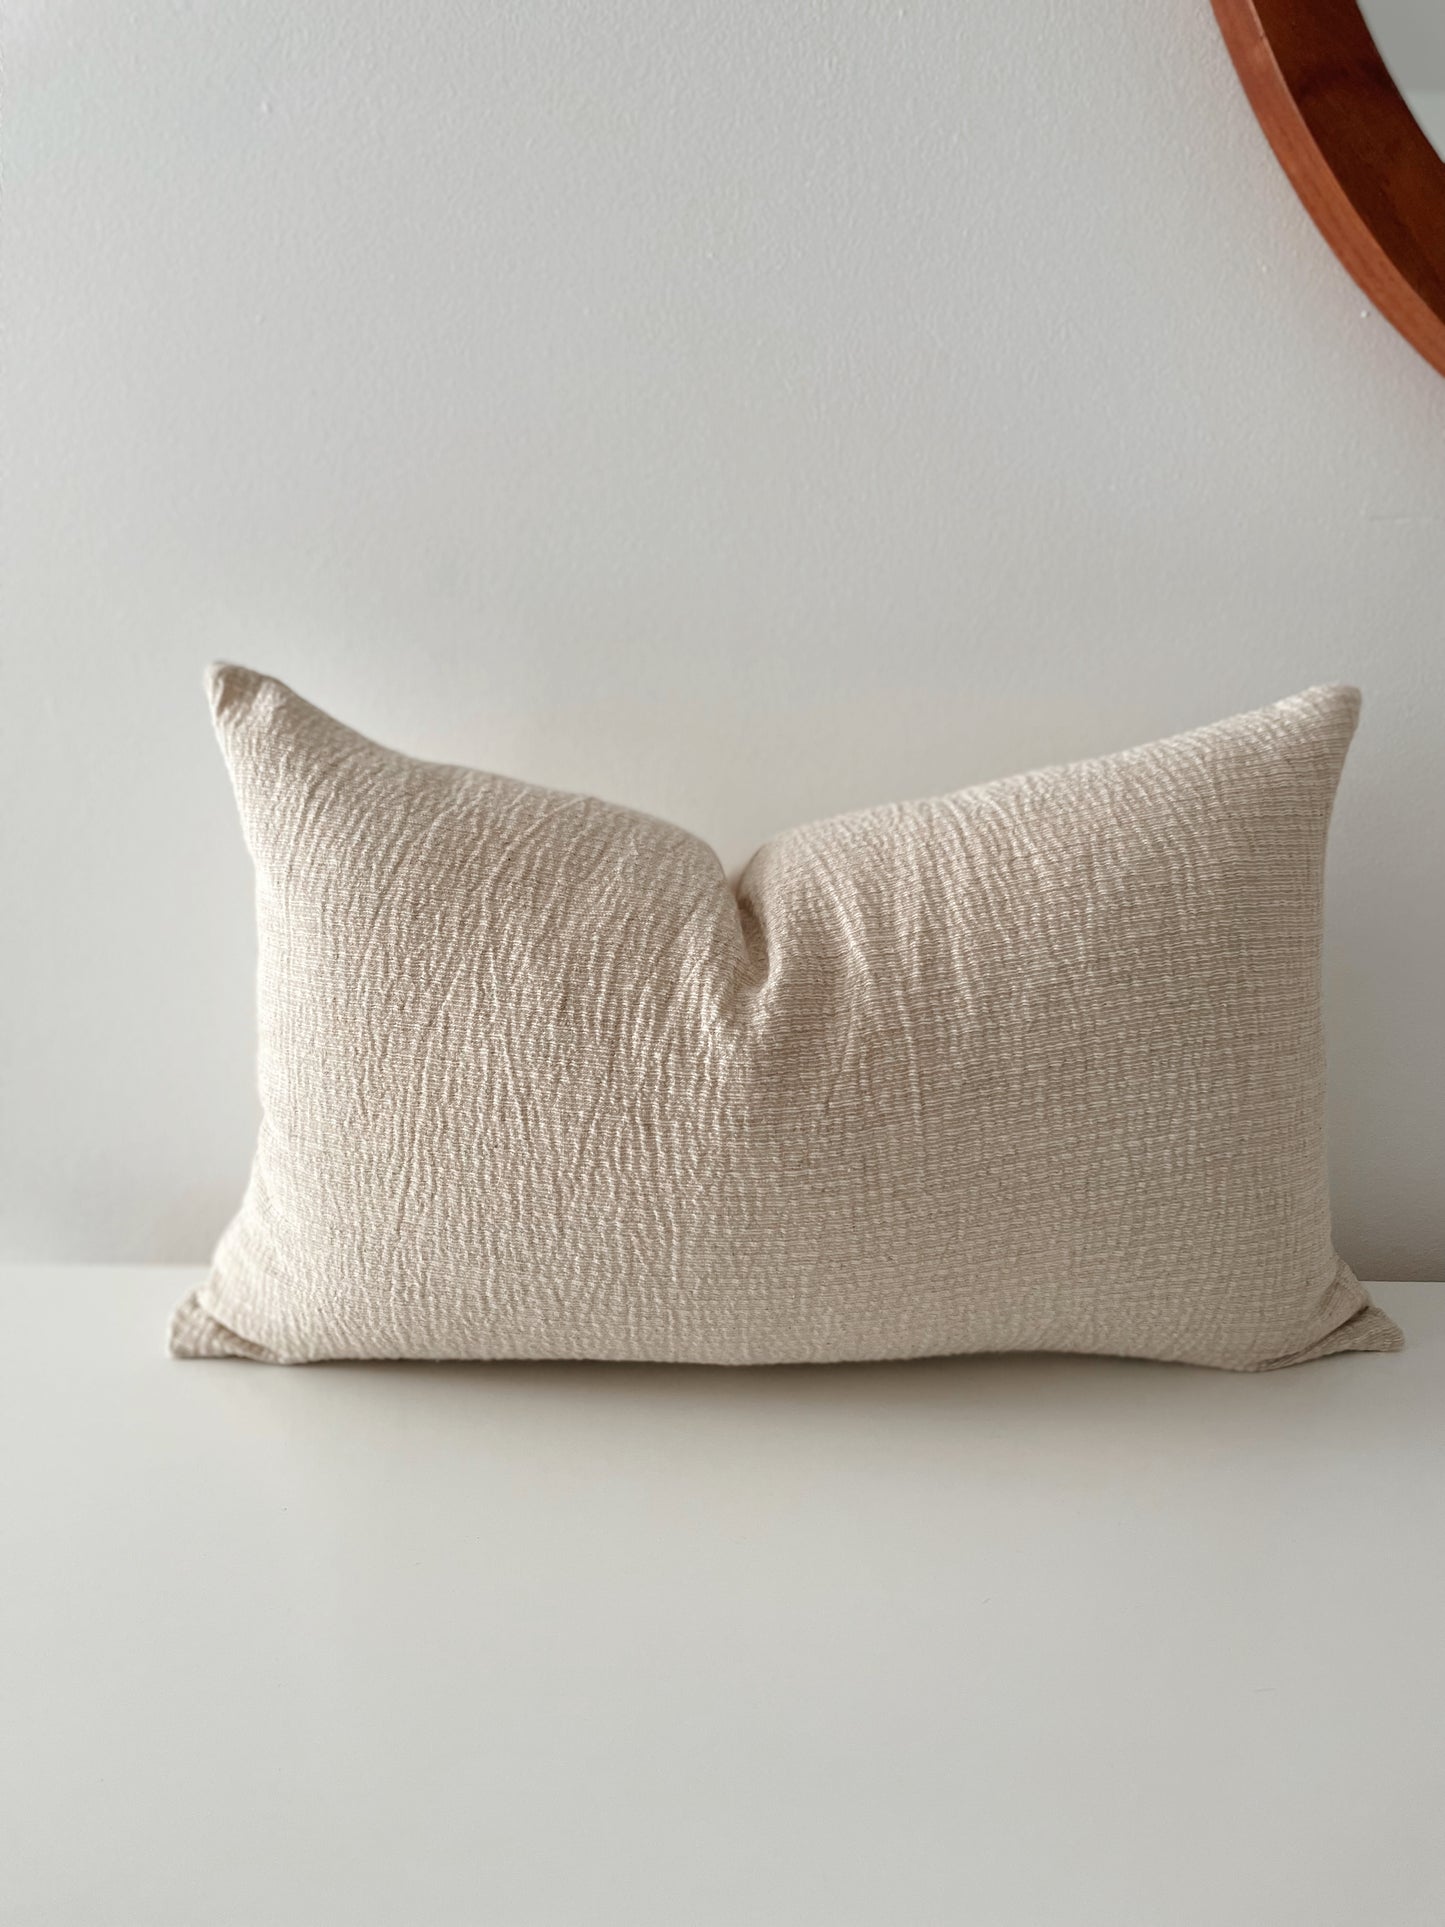 Blair Woven Pillow Cover